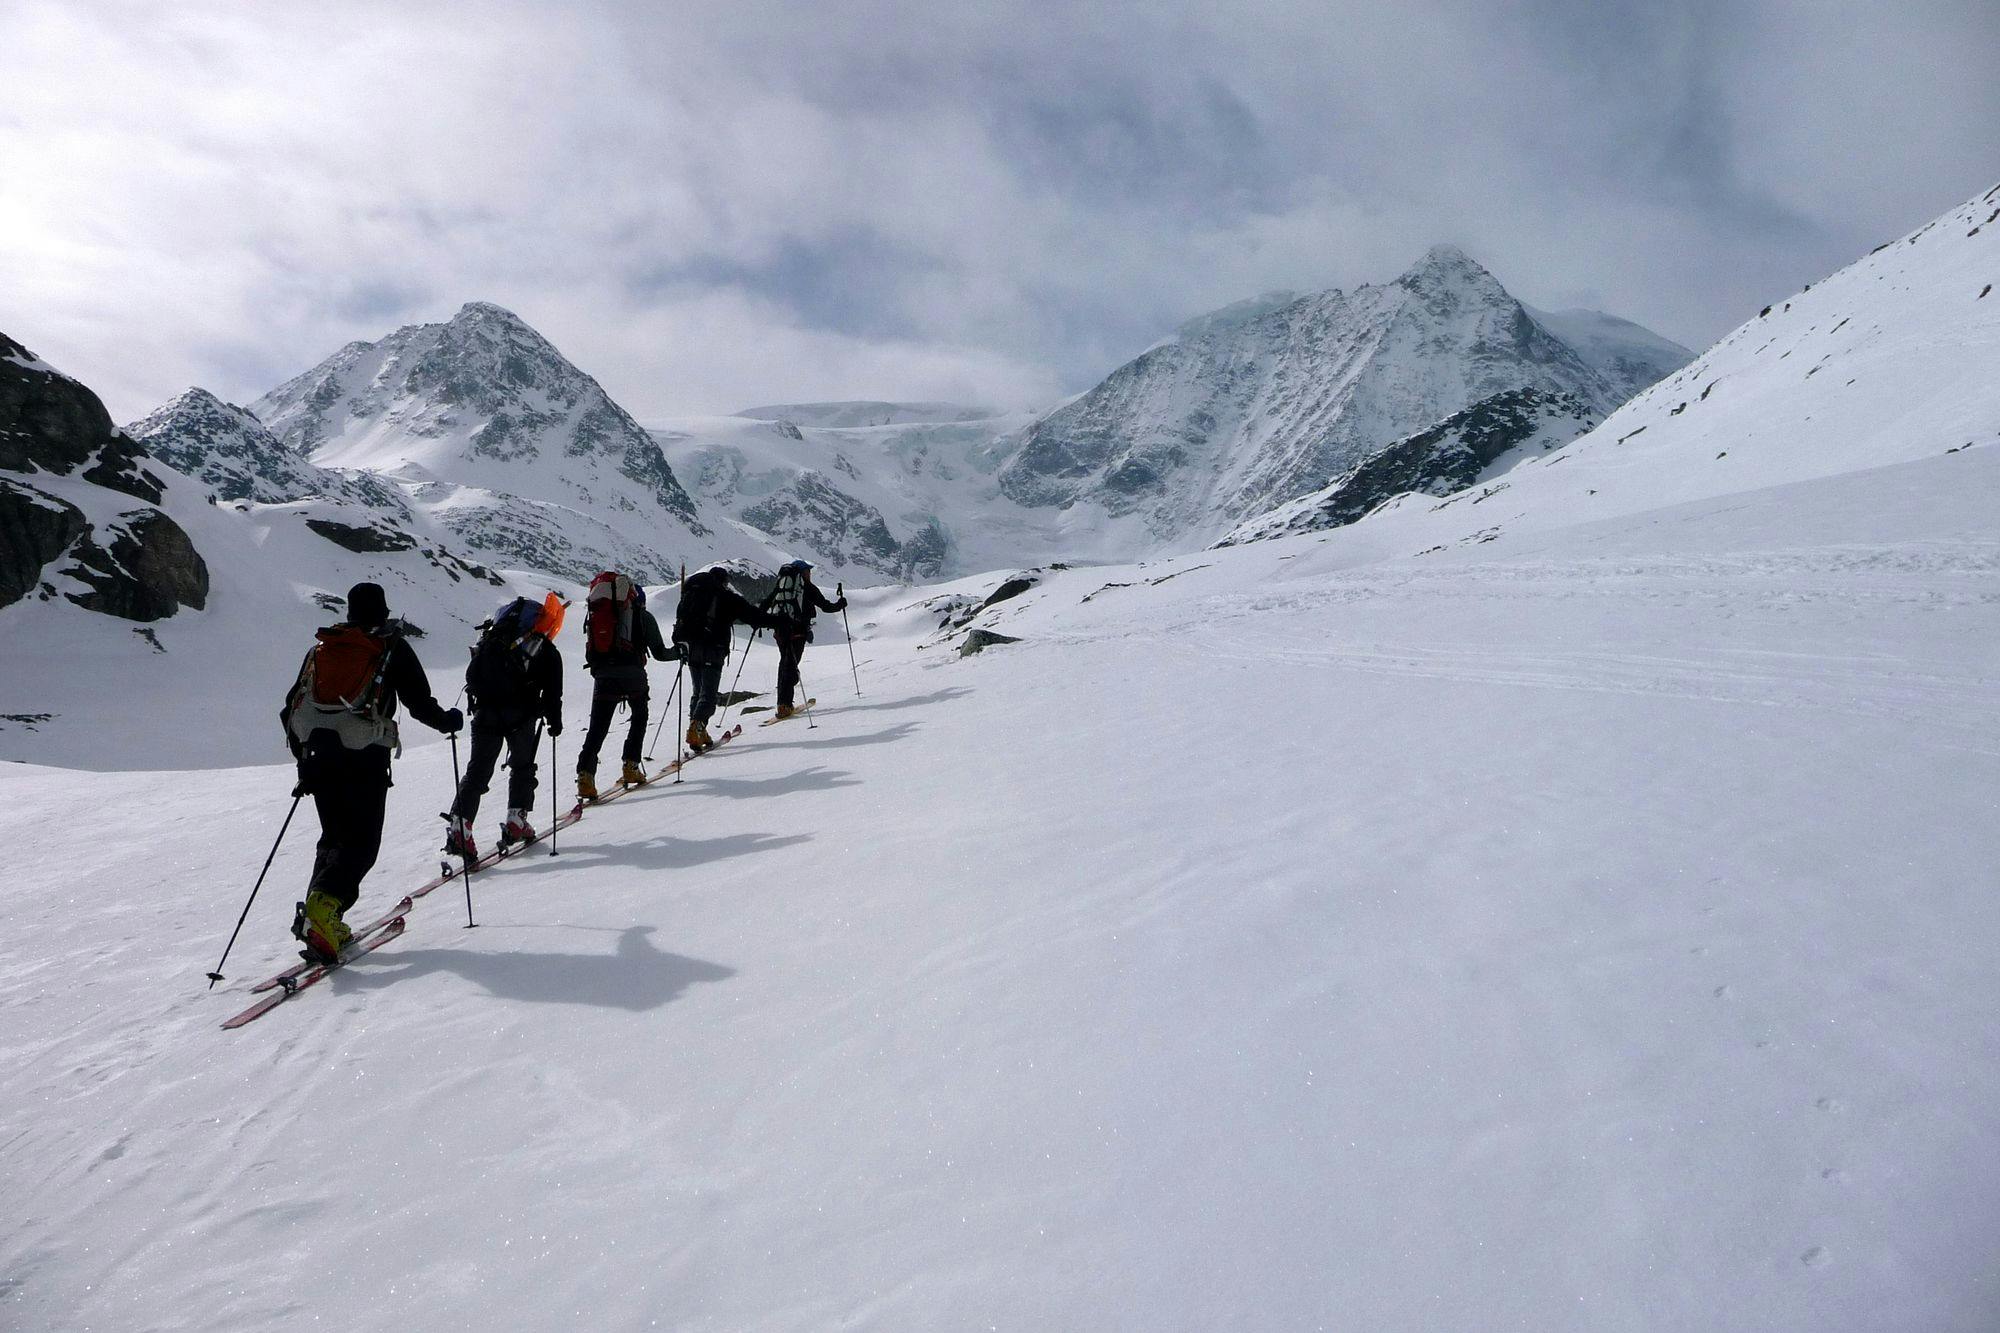 Haute Route: Chamonix to Zermatt ski touring